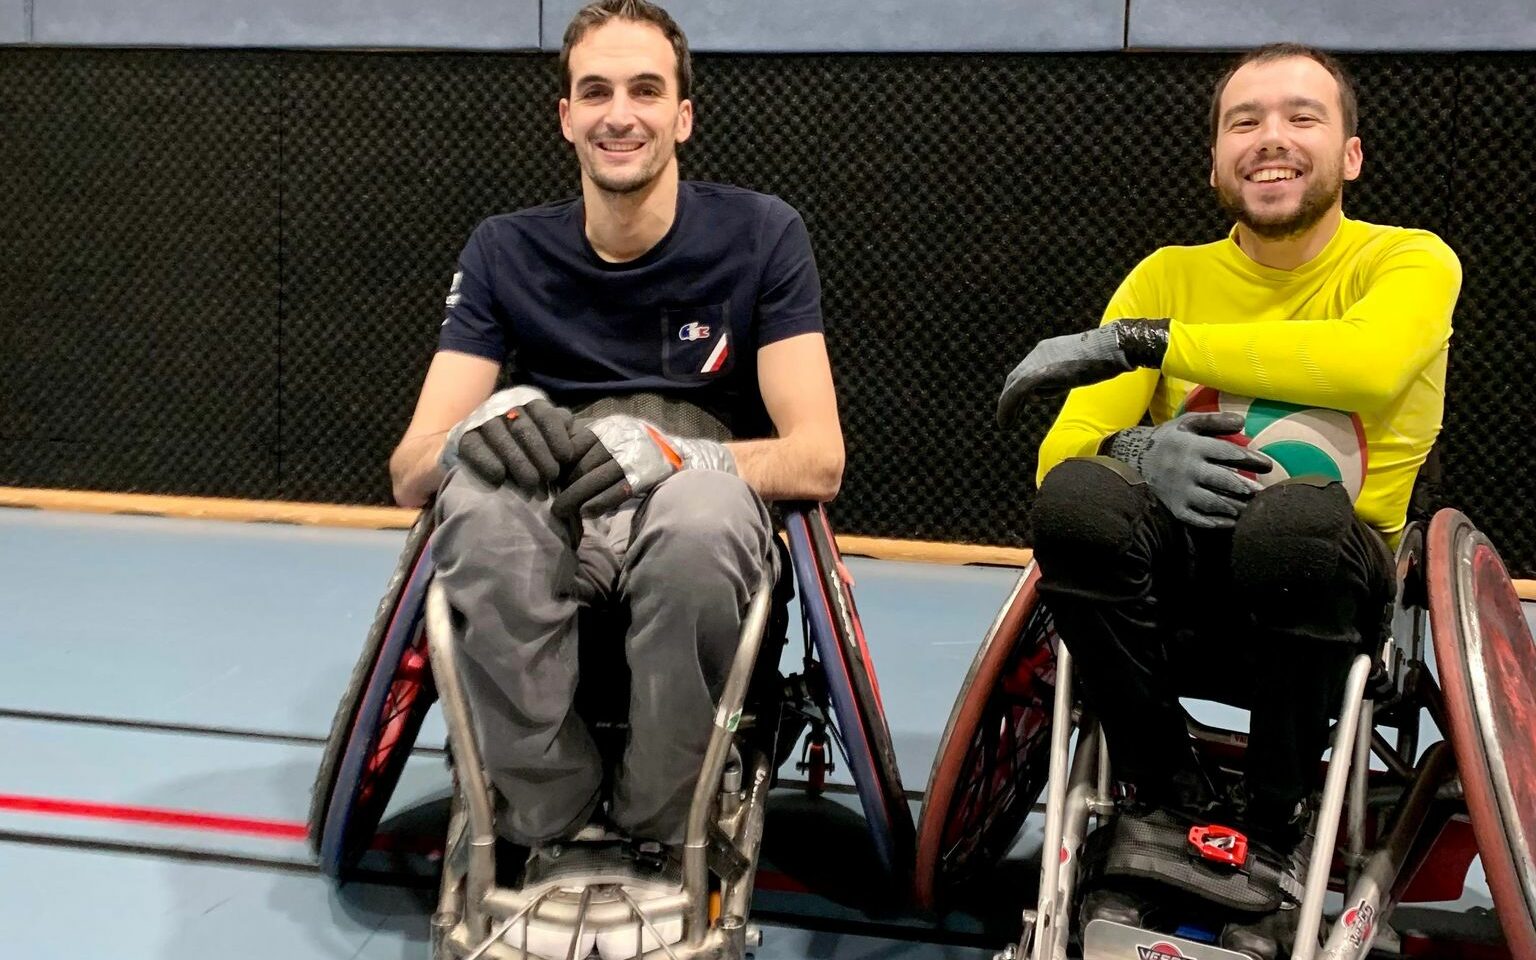 2 asémistes présents aux Japan Para Championships 2023 Wheelchair Rugby